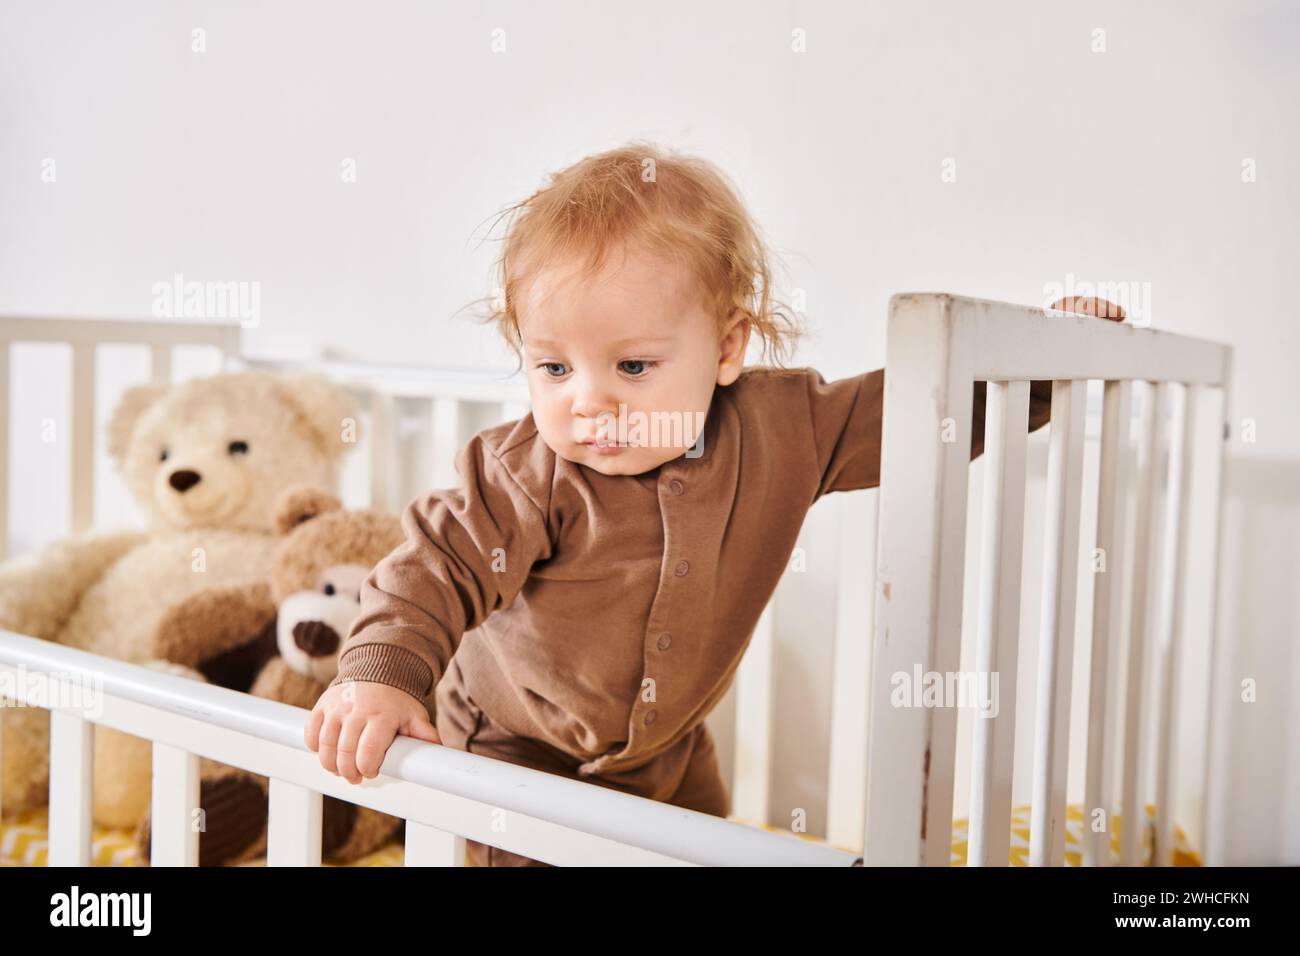 Glückliche Kindheit, entzückender kleiner Junge, der im Kinderbett mit weichen Spielzeugen im gemütlichen Kinderzimmer zu Hause steht Stockfoto